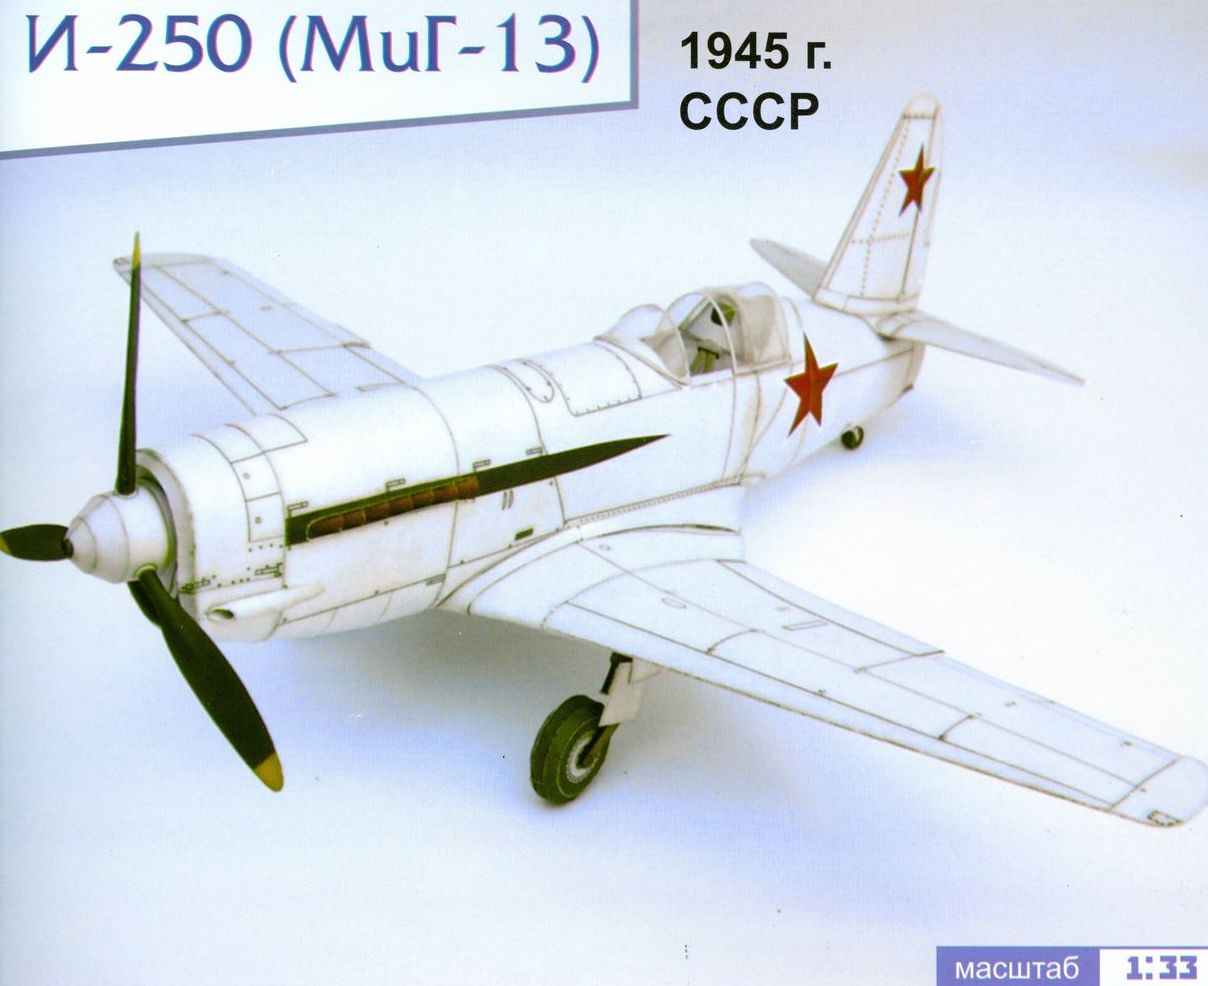 I-250 (MIG-13)